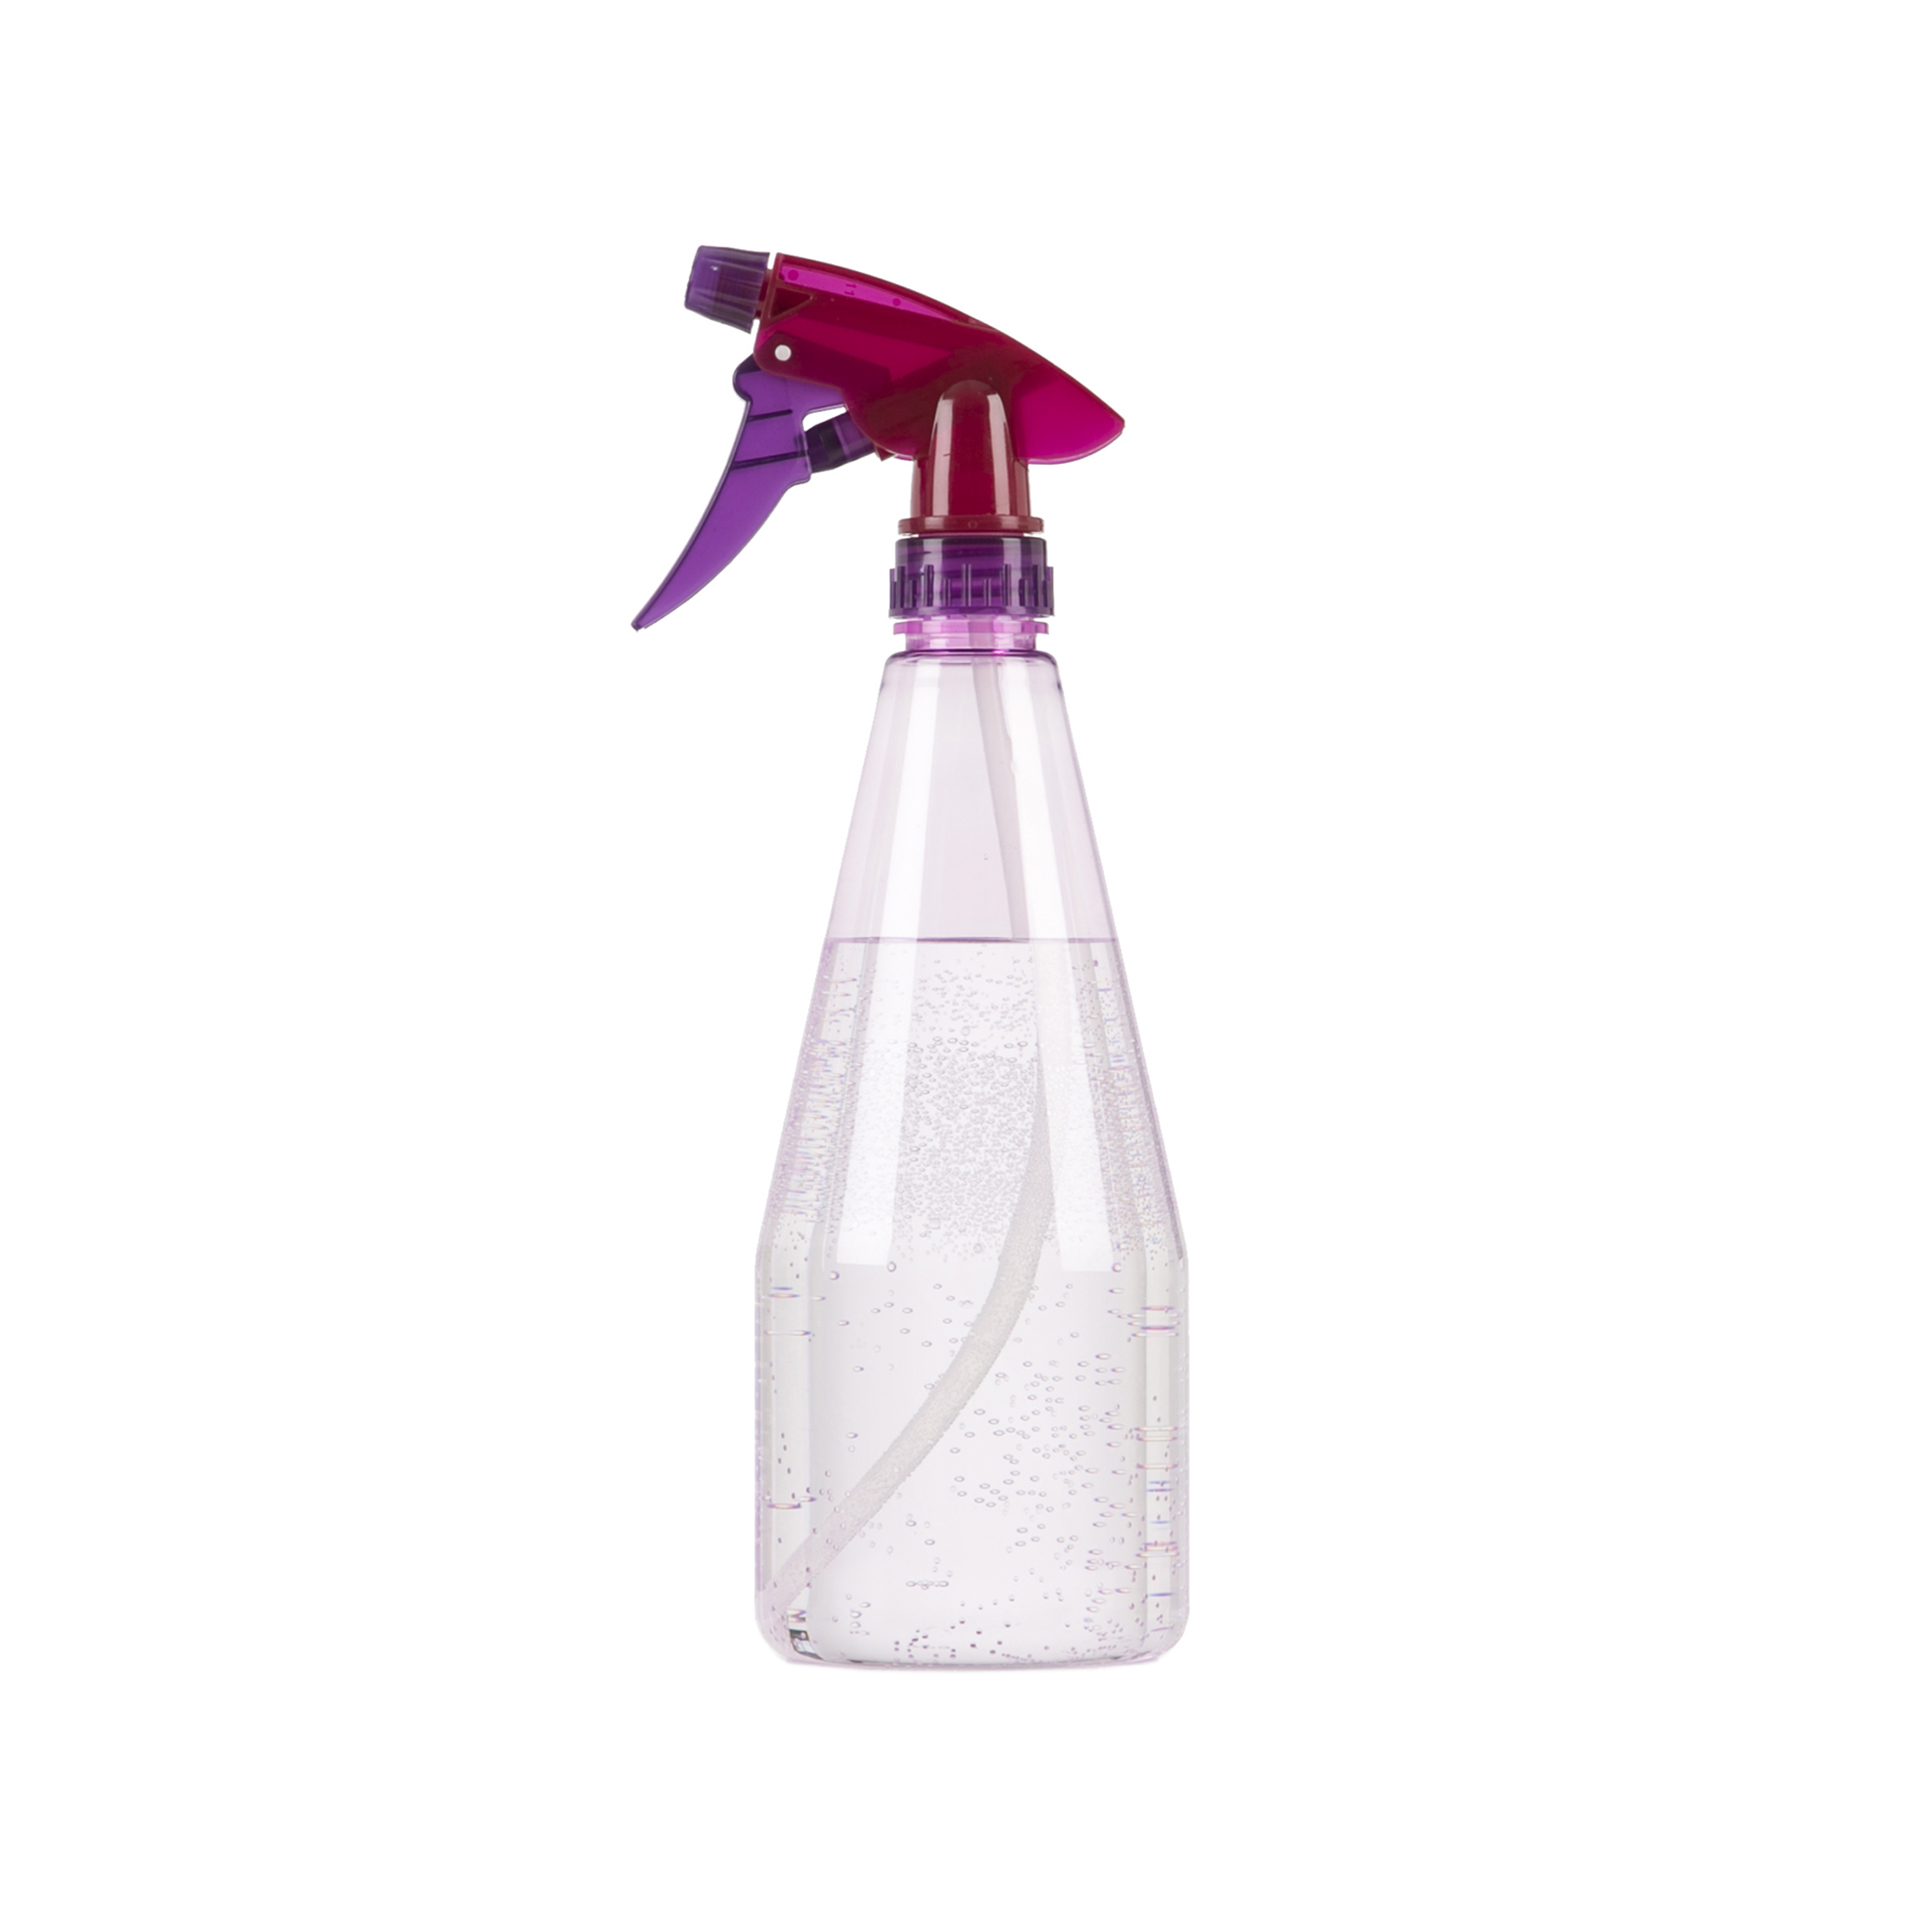 Sprayer Pflanzensprüher Pink/Violet 142/27